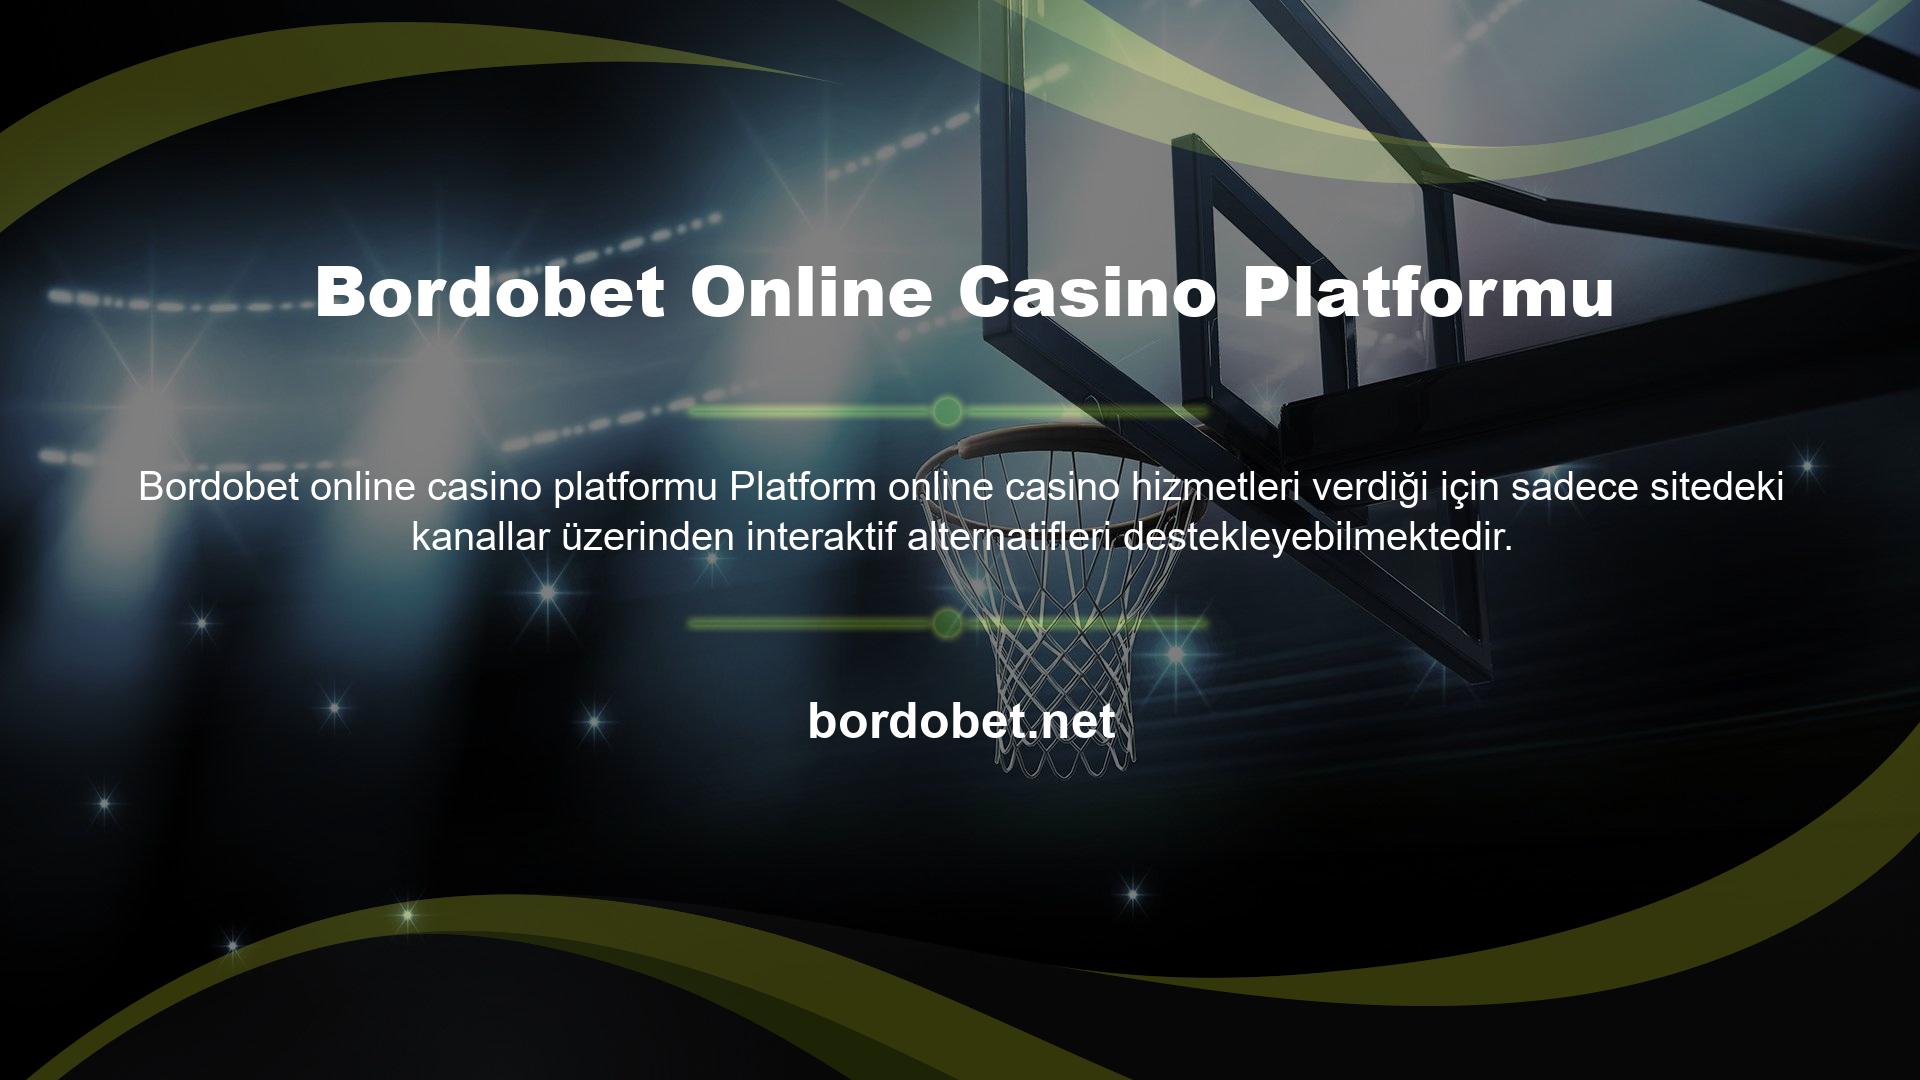 Bordobet Canlı Destek sitesi kullanıcıları ve siteye üye olmak isteyen kullanıcılar için canlı destek hizmeti verilmektedir